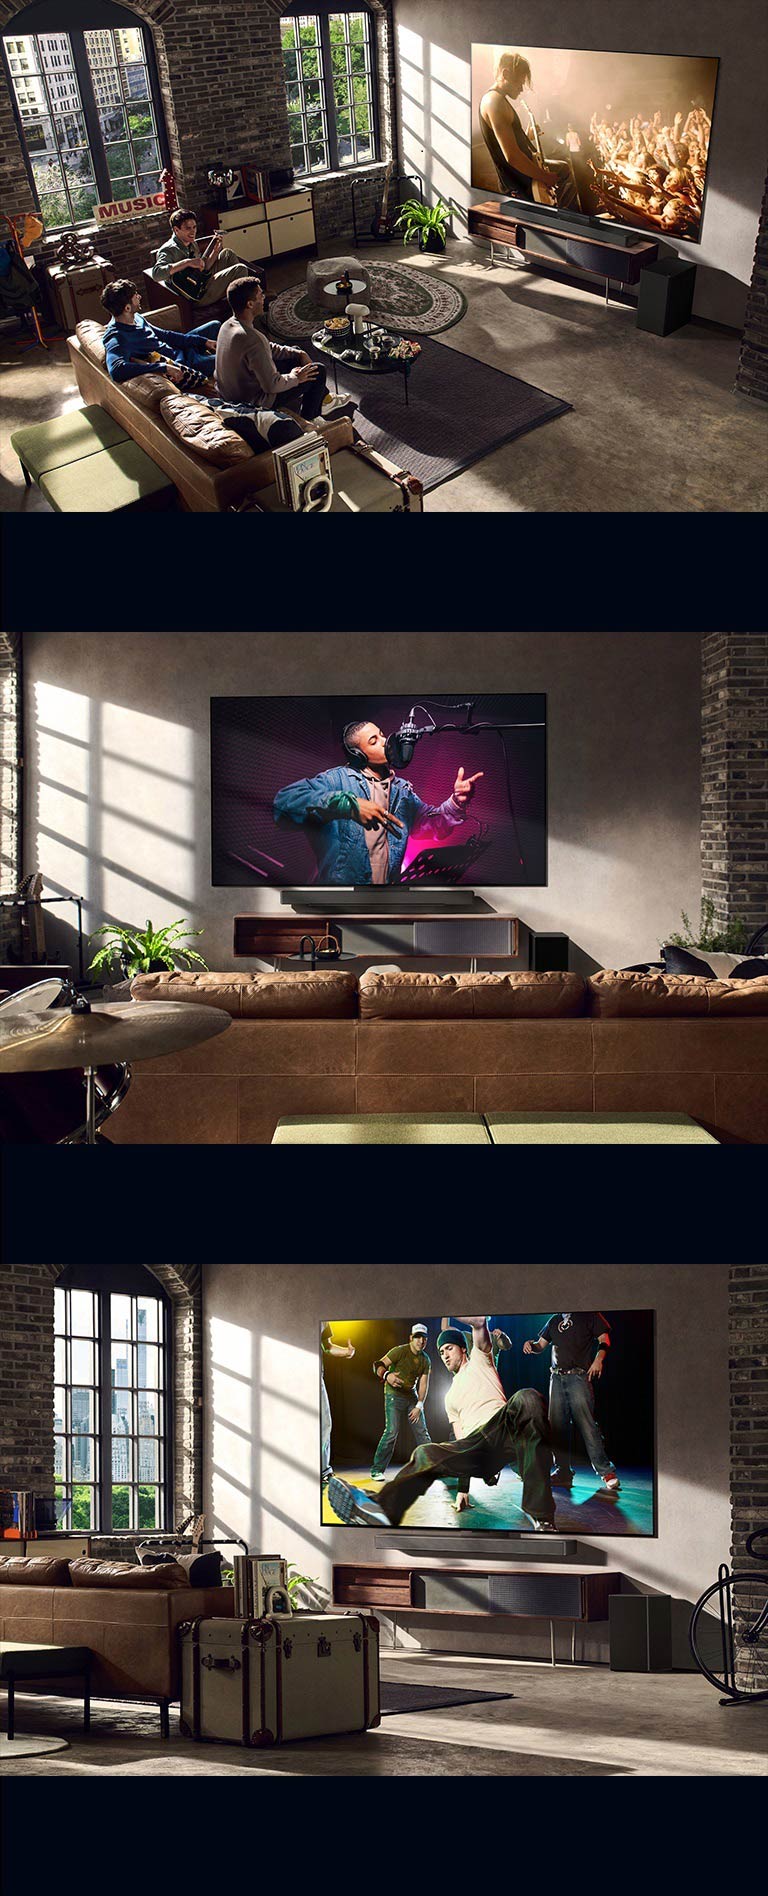 Det vises tre livsstilsbilder. Fra øverst til nederst: tre menn ser på en konsertvideo i stua. Det er en LG TV på veggen som viser en musikkinnspillingsscene, og LG TV-en på veggen viser en breakdance-scene i diagonal visning.